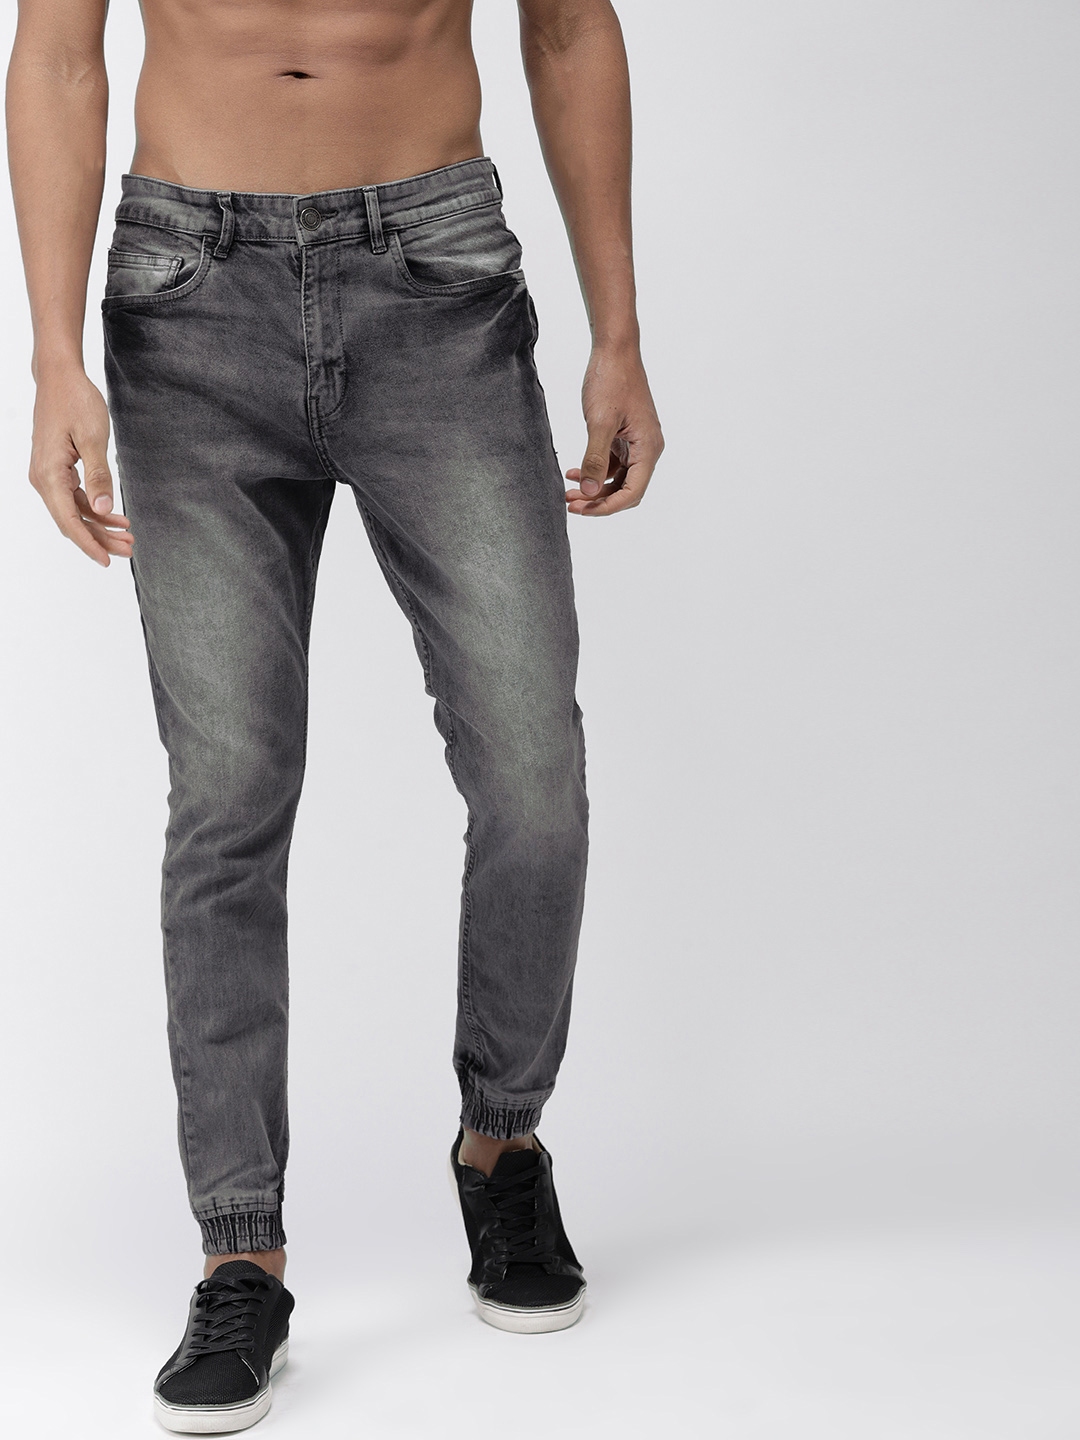 troosten binnenvallen beha Buy HIGHLANDER Men Grey Jogger Mid Rise Clean Look Stretchable Jeans - Jeans  for Men 4322609 | Myntra